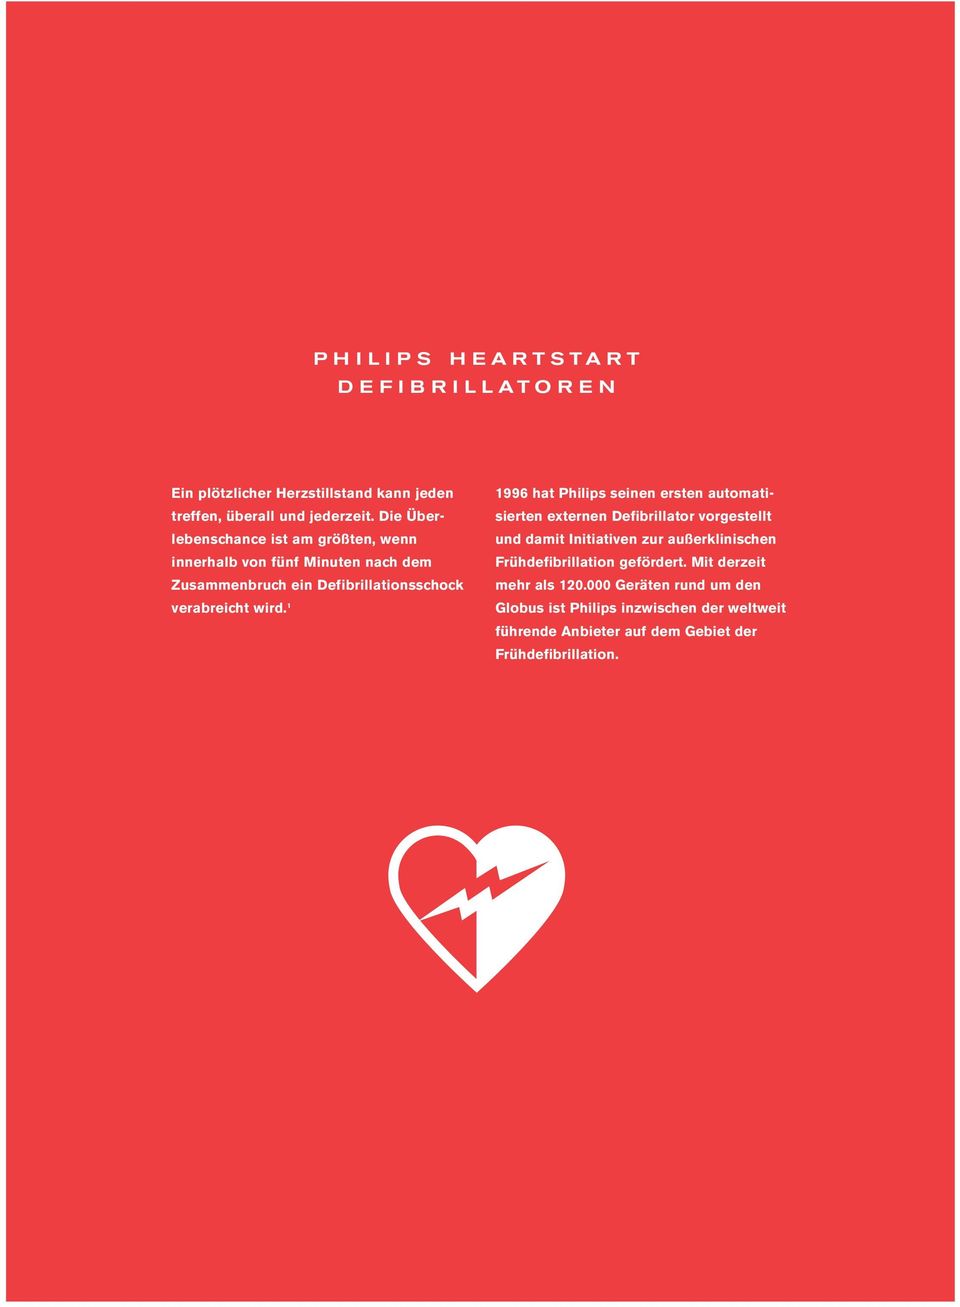 1 1996 hat Philips seinen ersten automatisierten externen Defibrillator vorgestellt und damit Initiativen zur außerklinischen